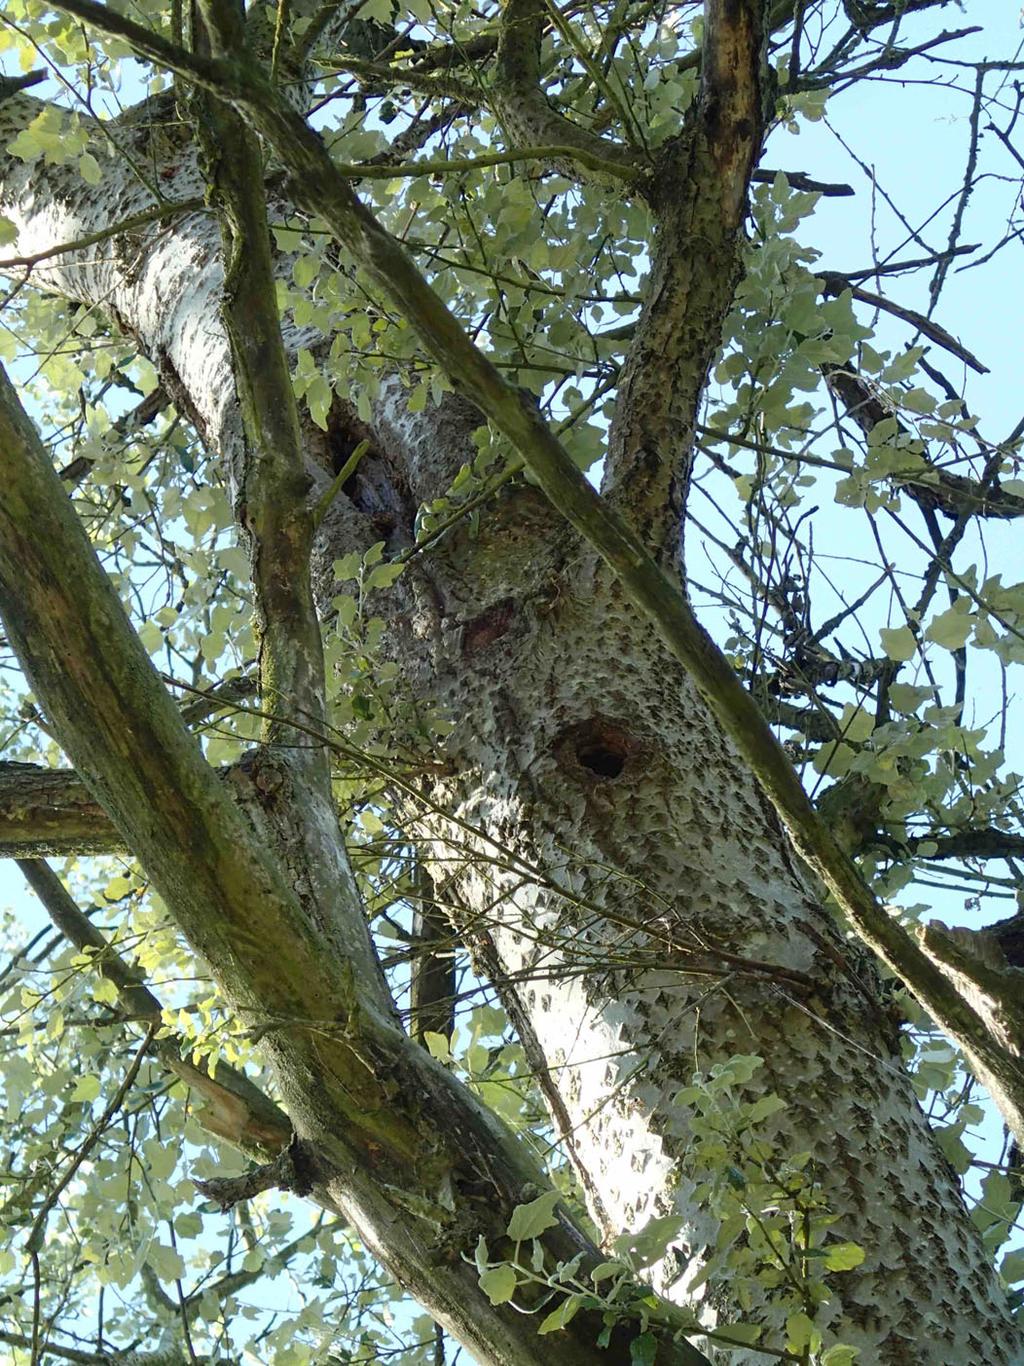 In de bomen is tevens gezocht naar nesten van vogels die jaarrond beschermd zijn, zoals bijvoorbeeld nesten van havik of buizerd. Tenslotte is gezocht naar nesten of sporen van eekhoorn en boommarter.